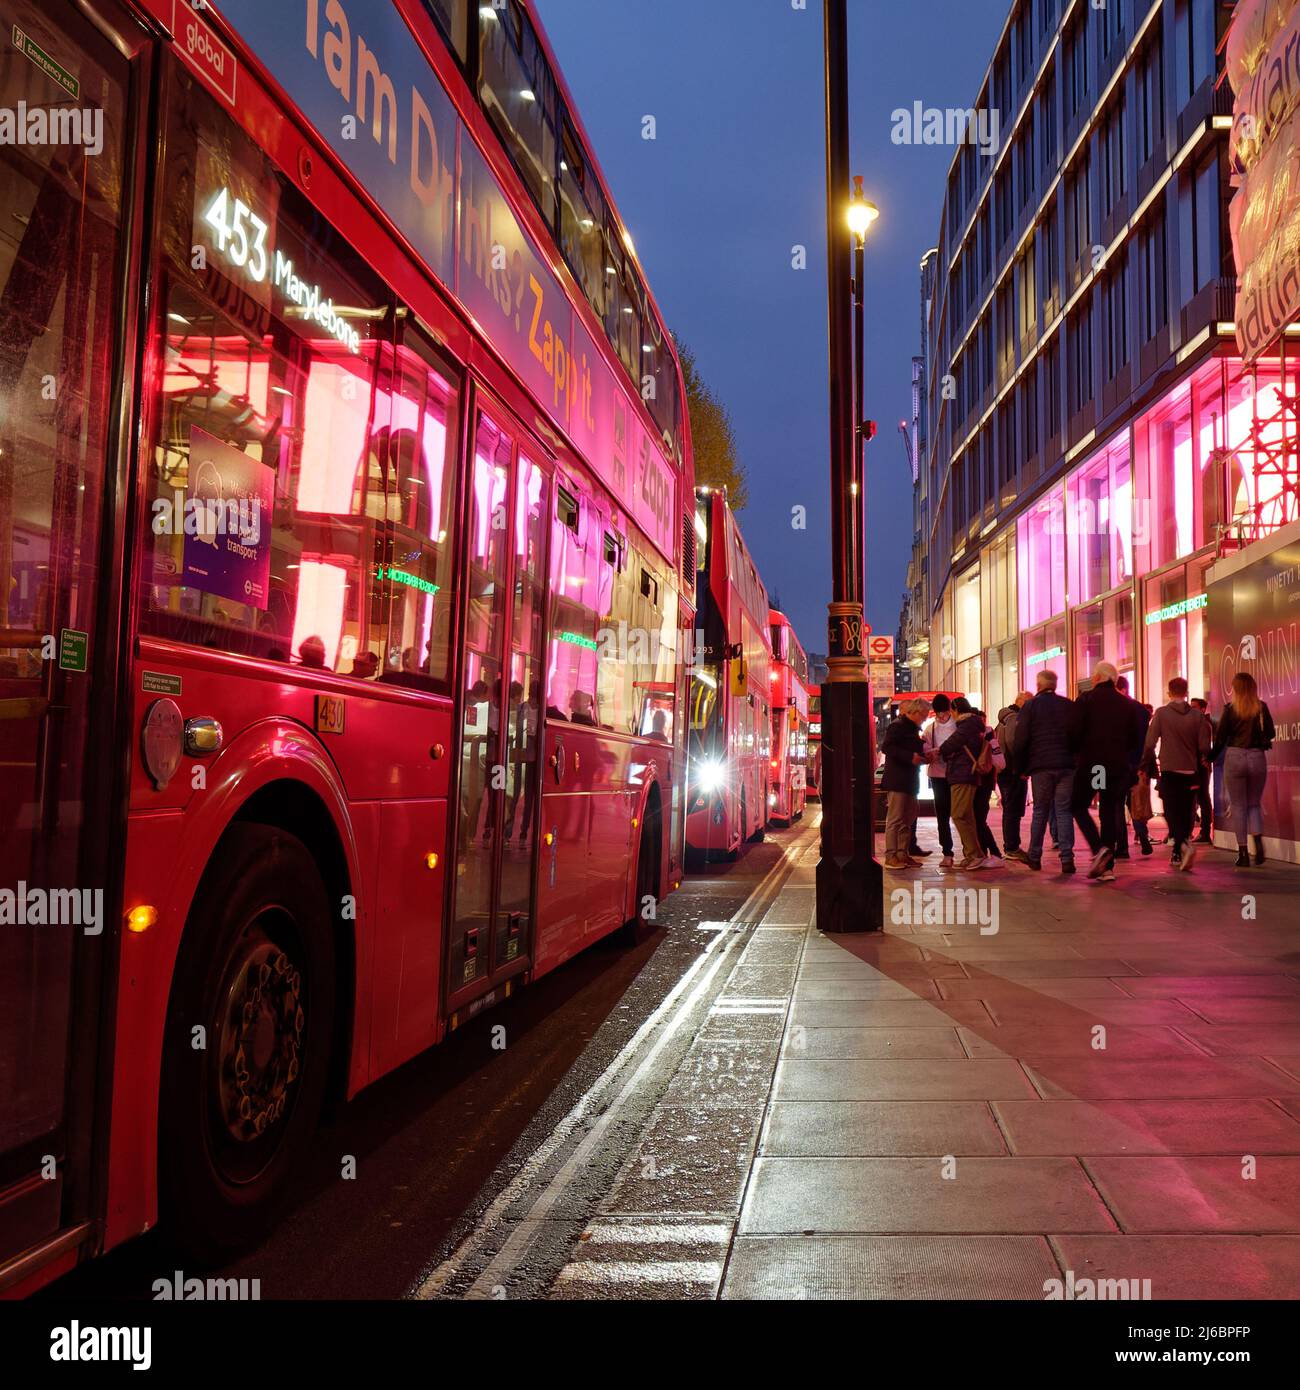 Londres, Grand Londres, Angleterre, avril 23 2022 : les lumières de la rue et de l'hôtel se reflètent sur un bus sur Oxford Street lorsque les piétons passent. Banque D'Images